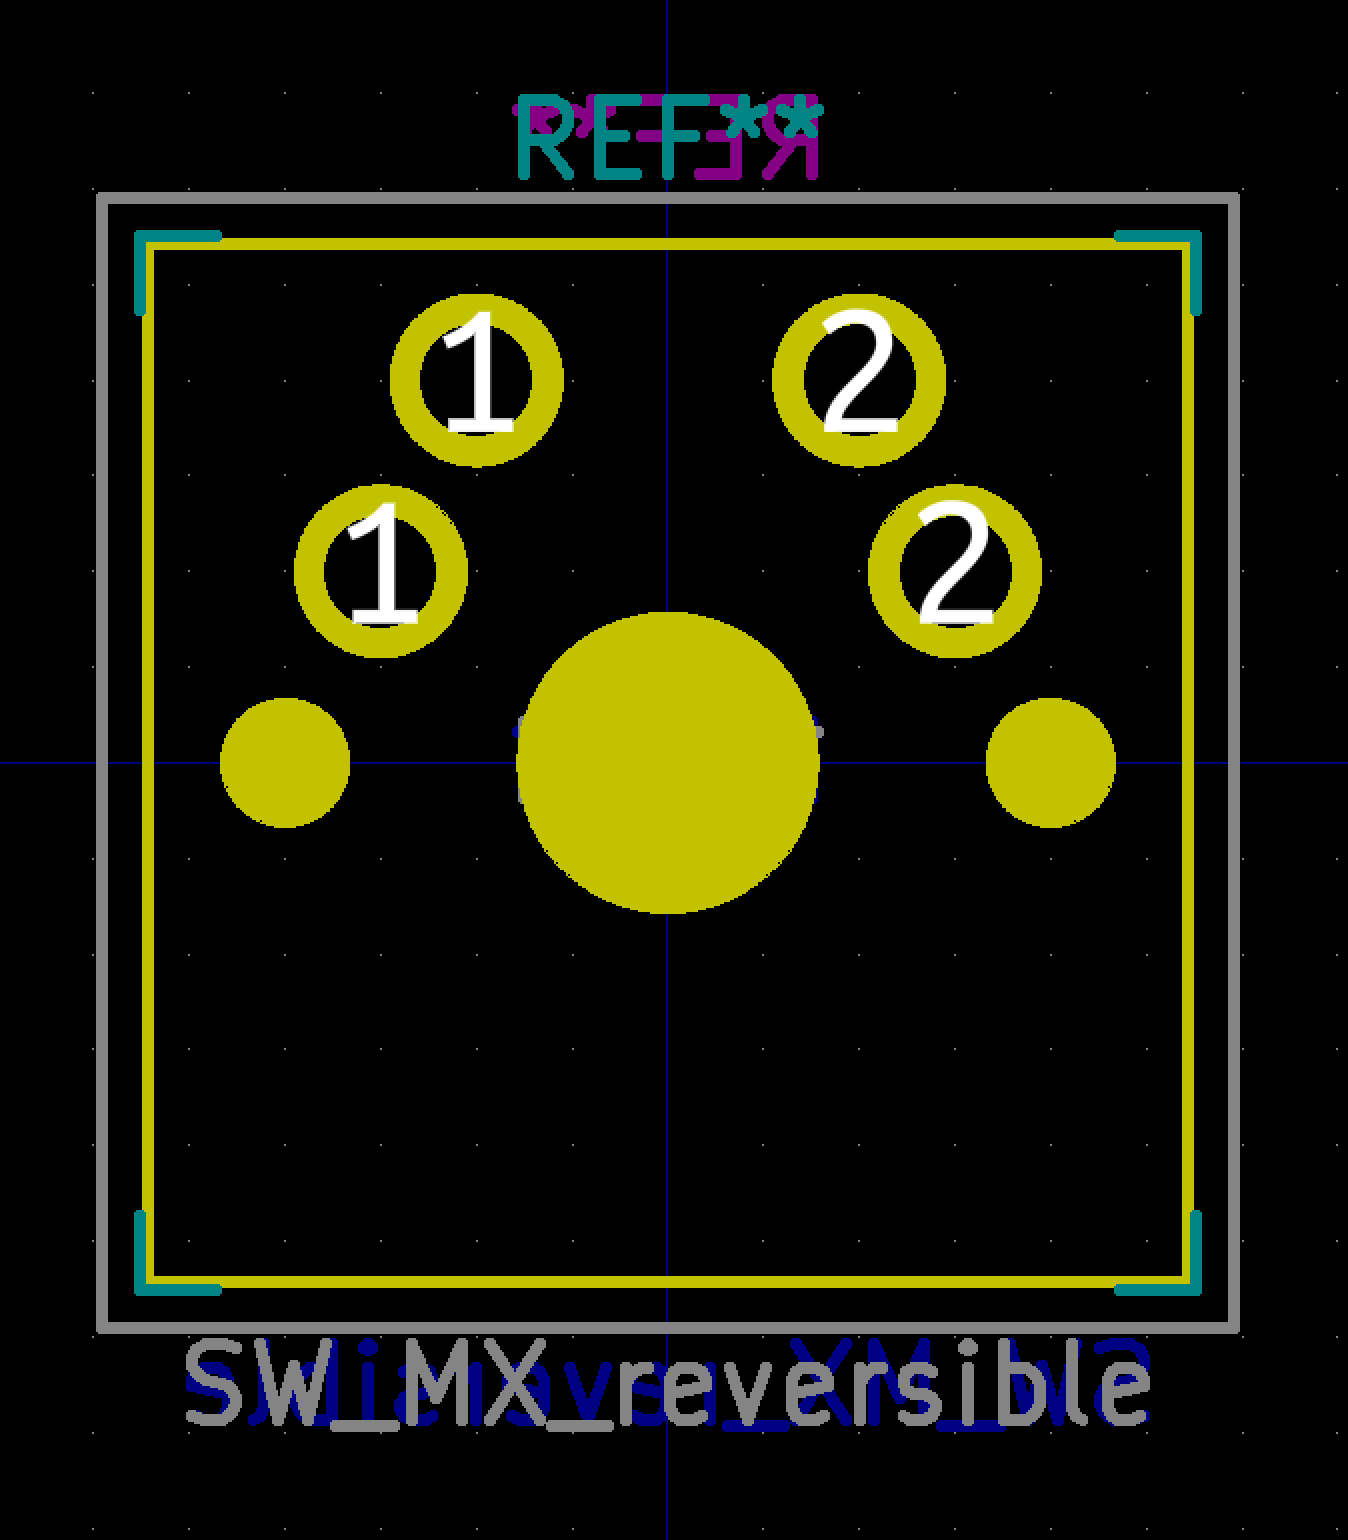 SW_MX_reversible